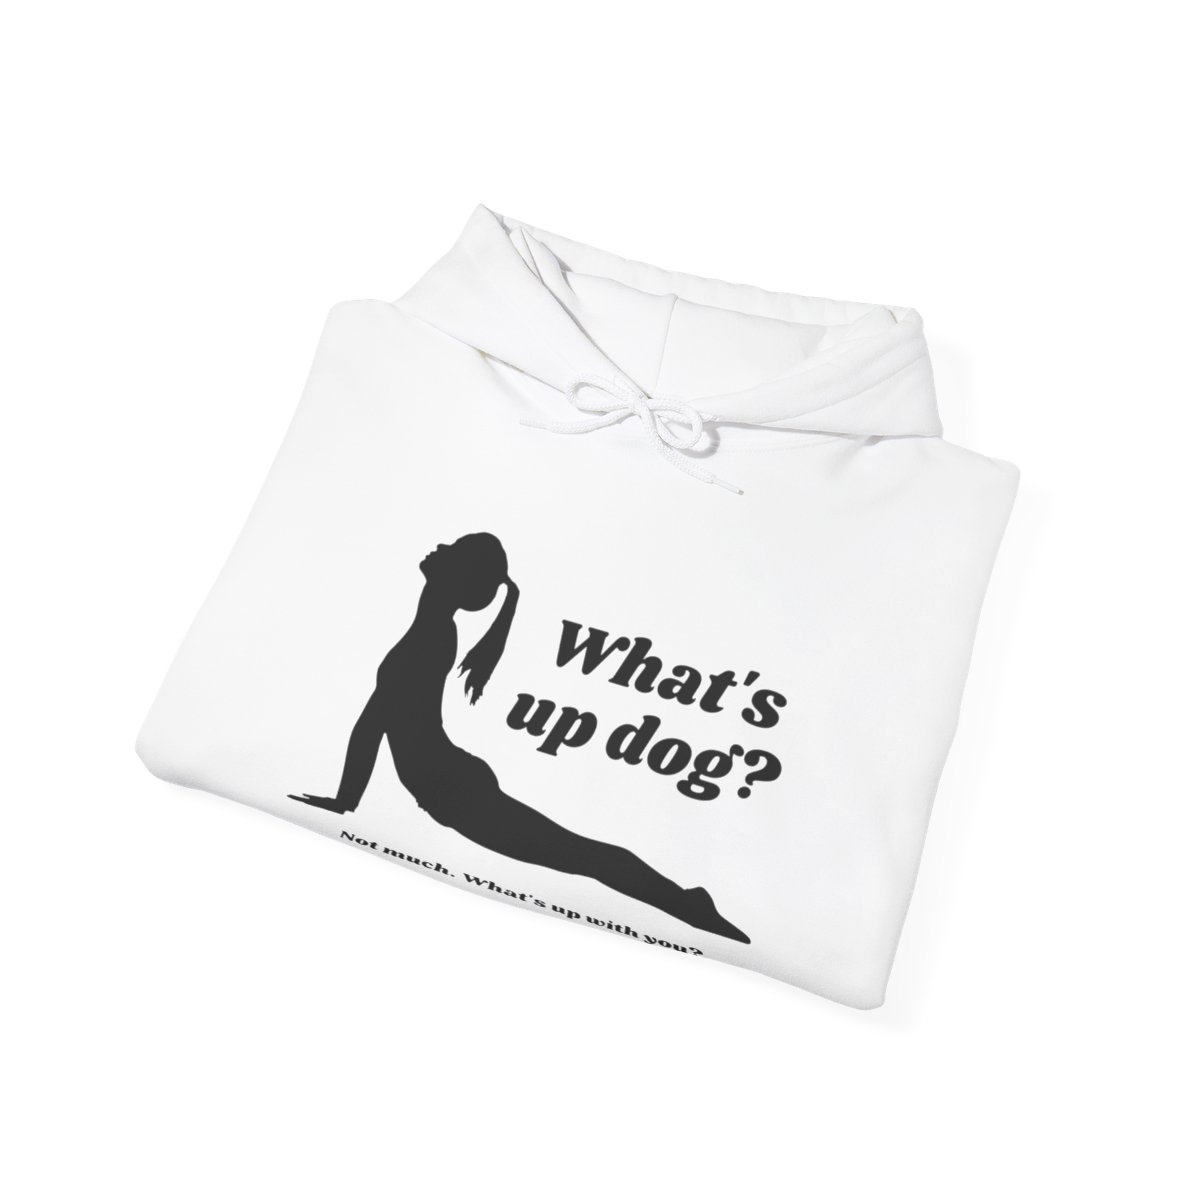 What's Up Dog? Unisex Hooded Sweatshirt product thumbnail image